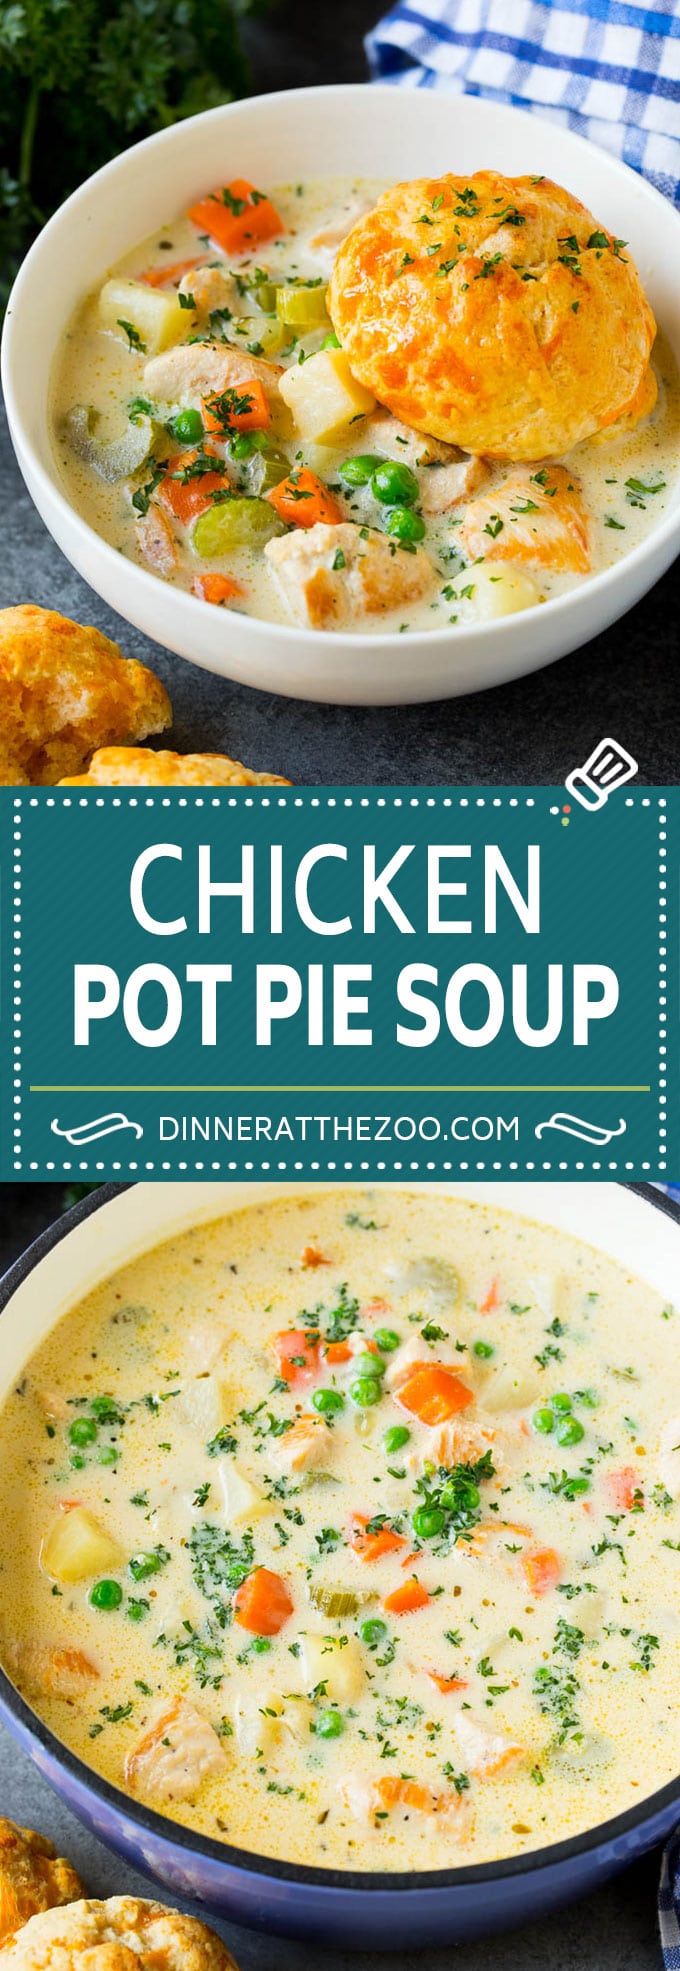 Receta de sopa de pastel de pollo |  Sopa de pollo #sopa # pollo # cena #confortfood #dinneratthezoo